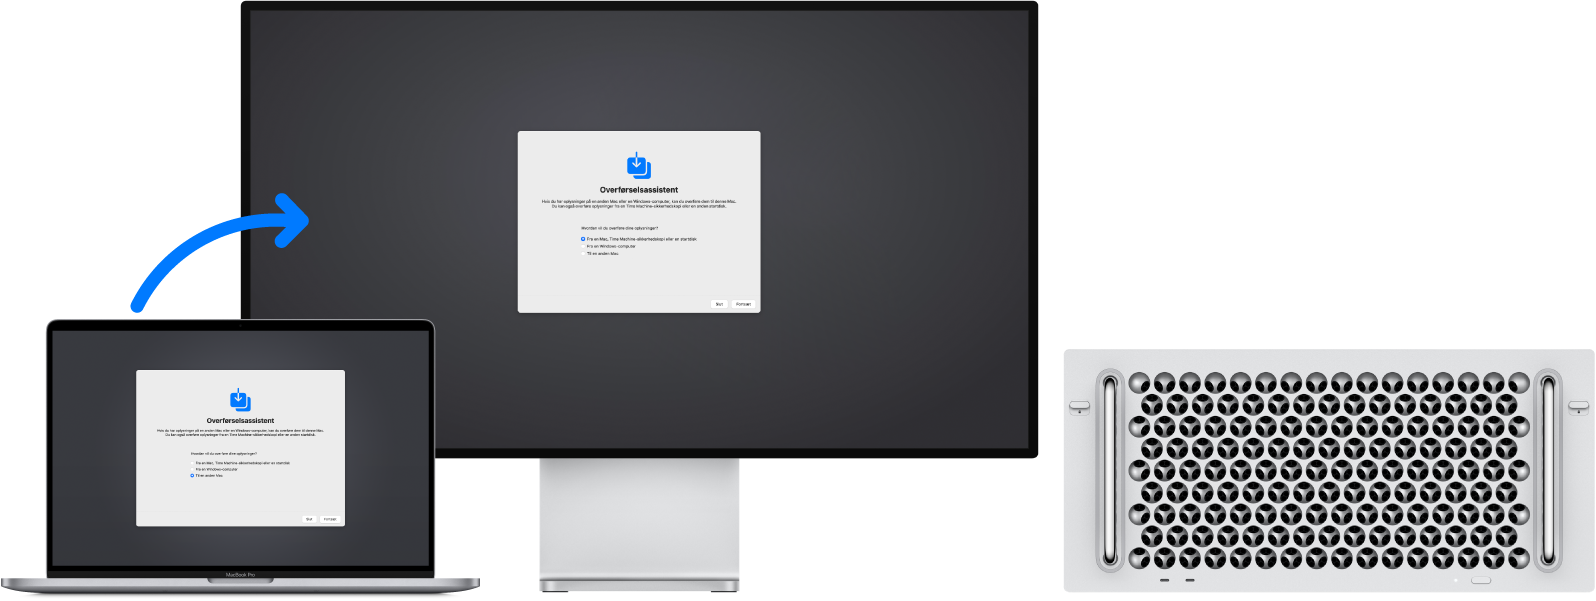 En MacBook Pro og en Mac Pro, der begge viser skærmen Overførselsassistent. En pil fra Mac Pro til MacBook Pro betyder, at der overføres data fra den ene til den anden.